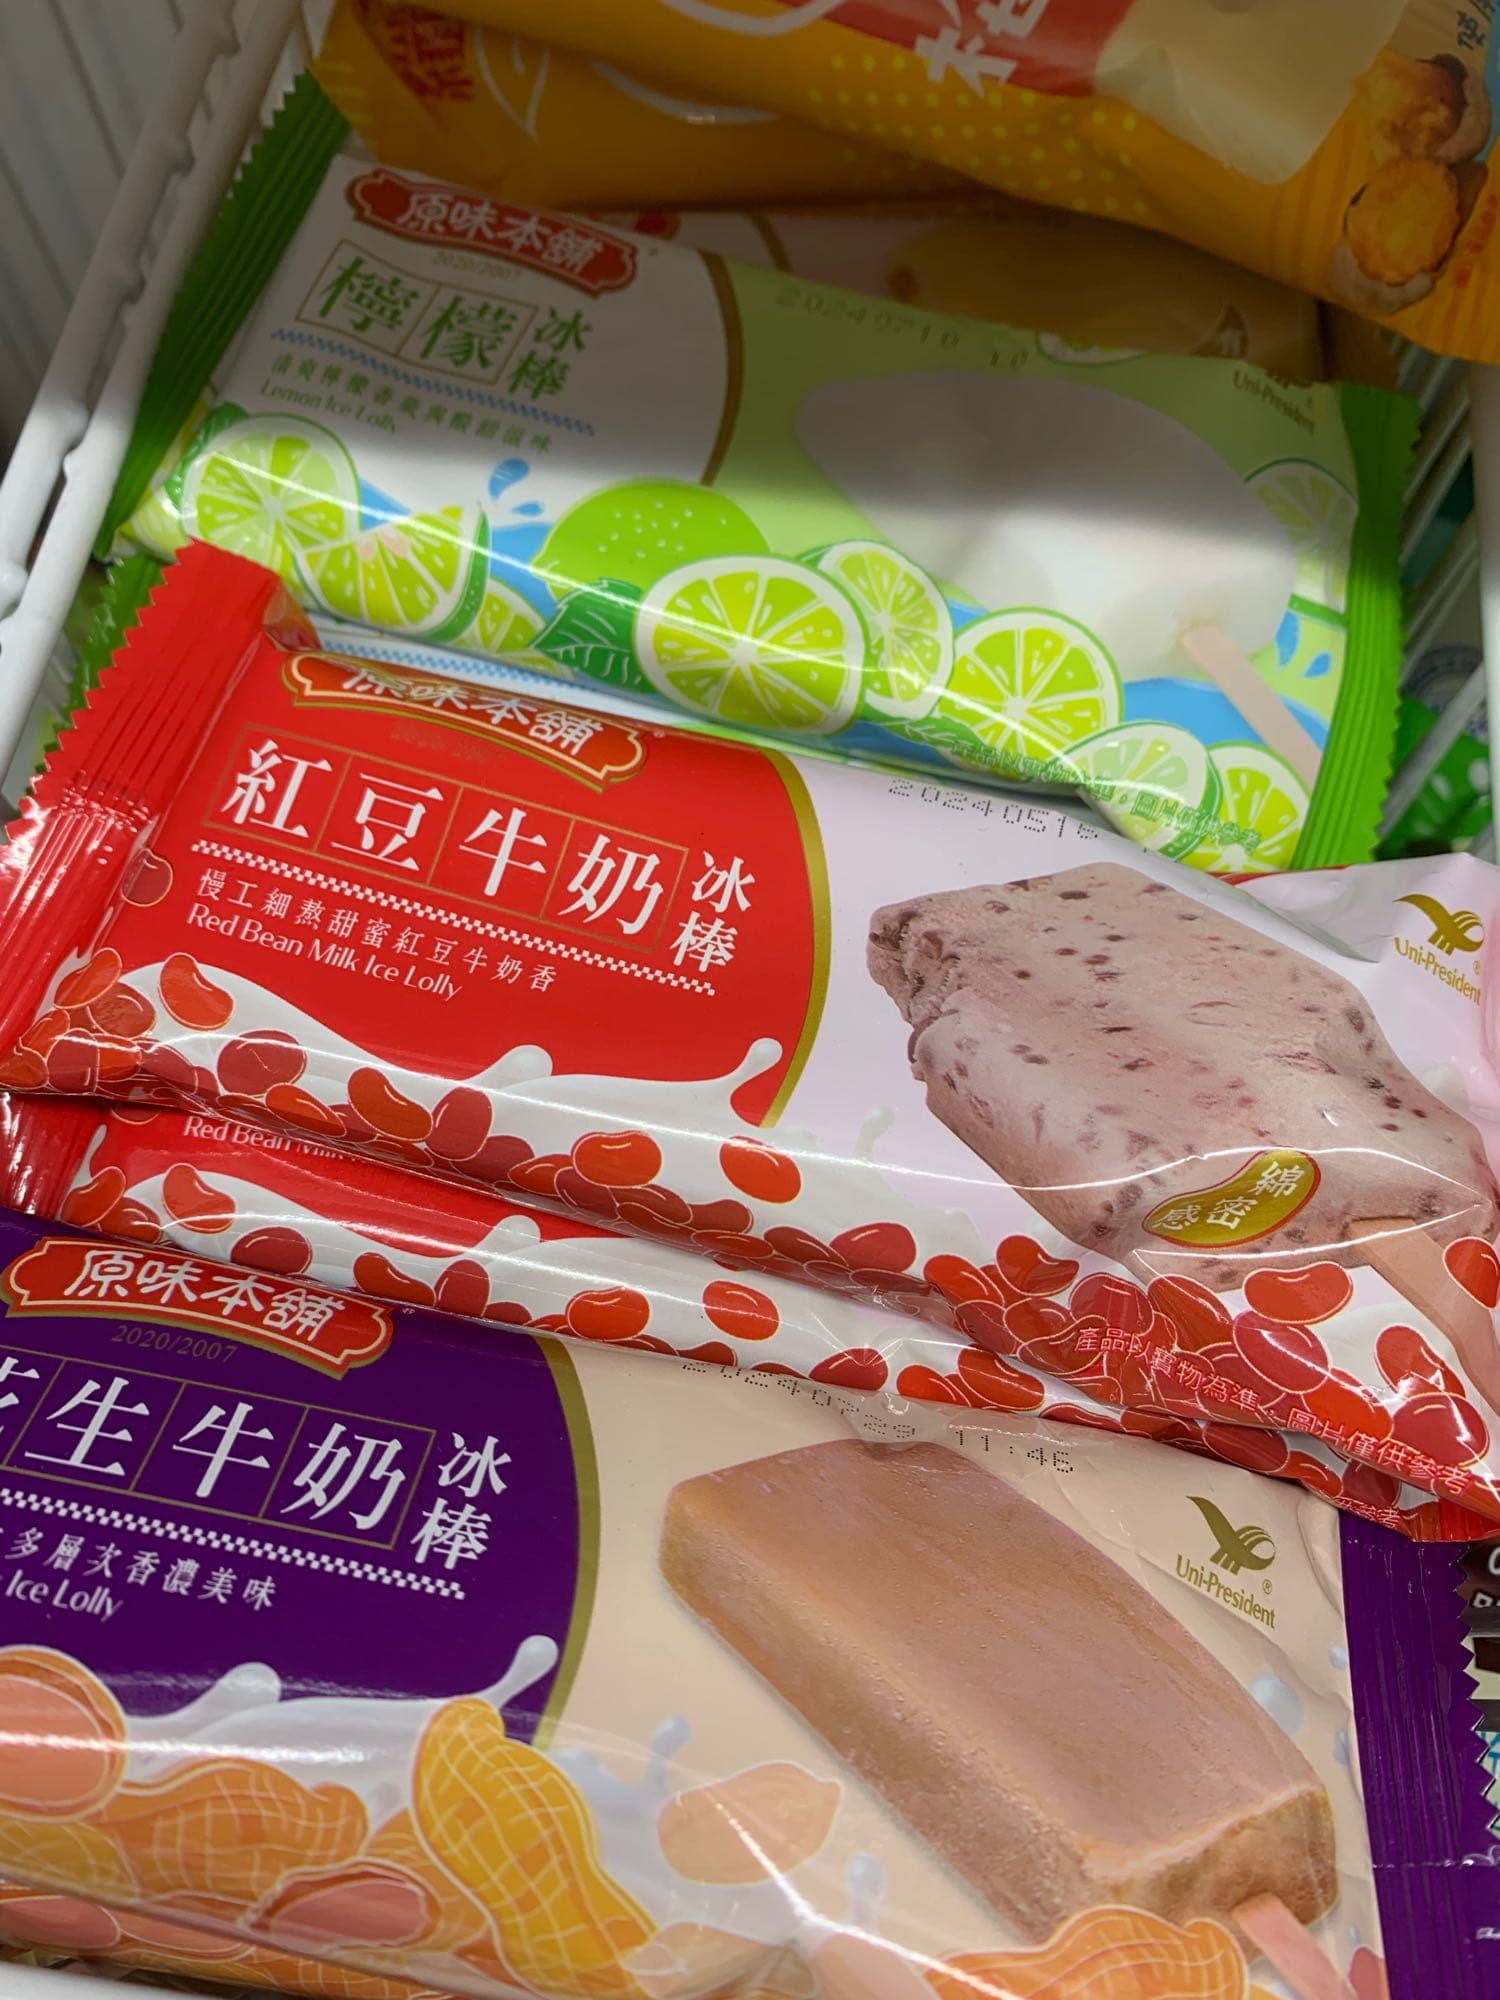 原味本舖紅豆牛奶冰棒🫘 - 贊助板 | Dcard